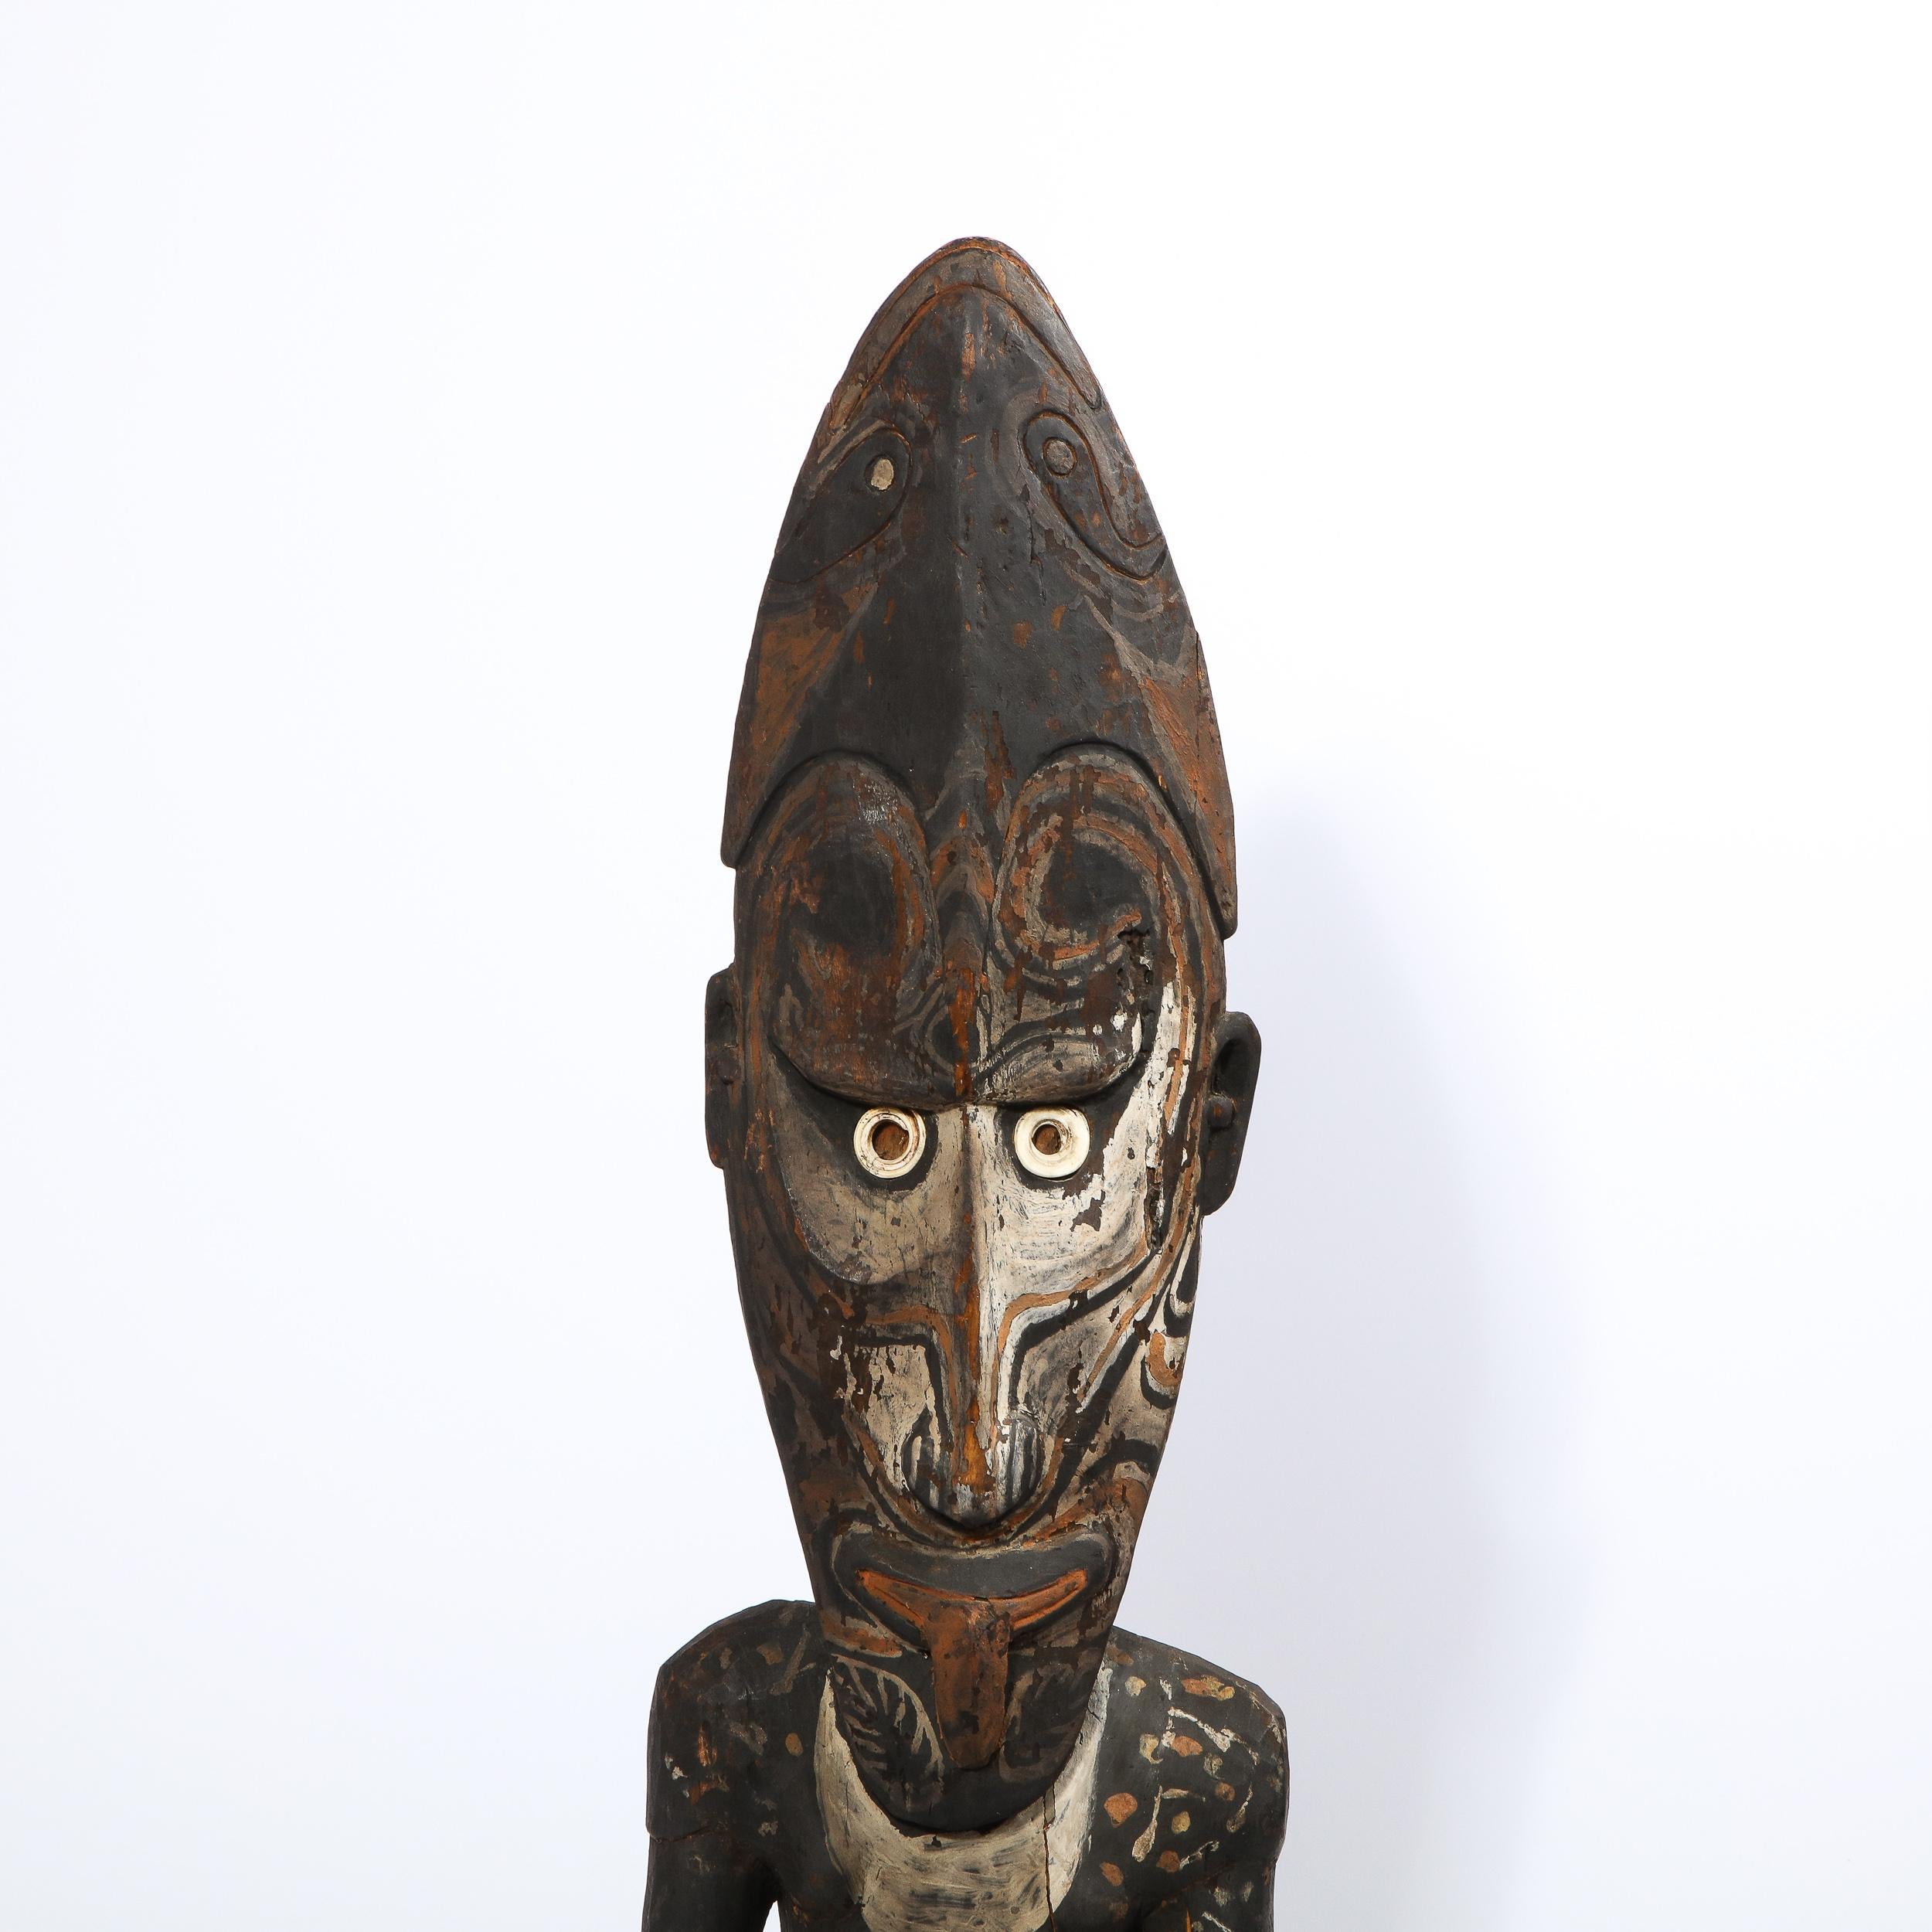 a wooden sculpture of papua